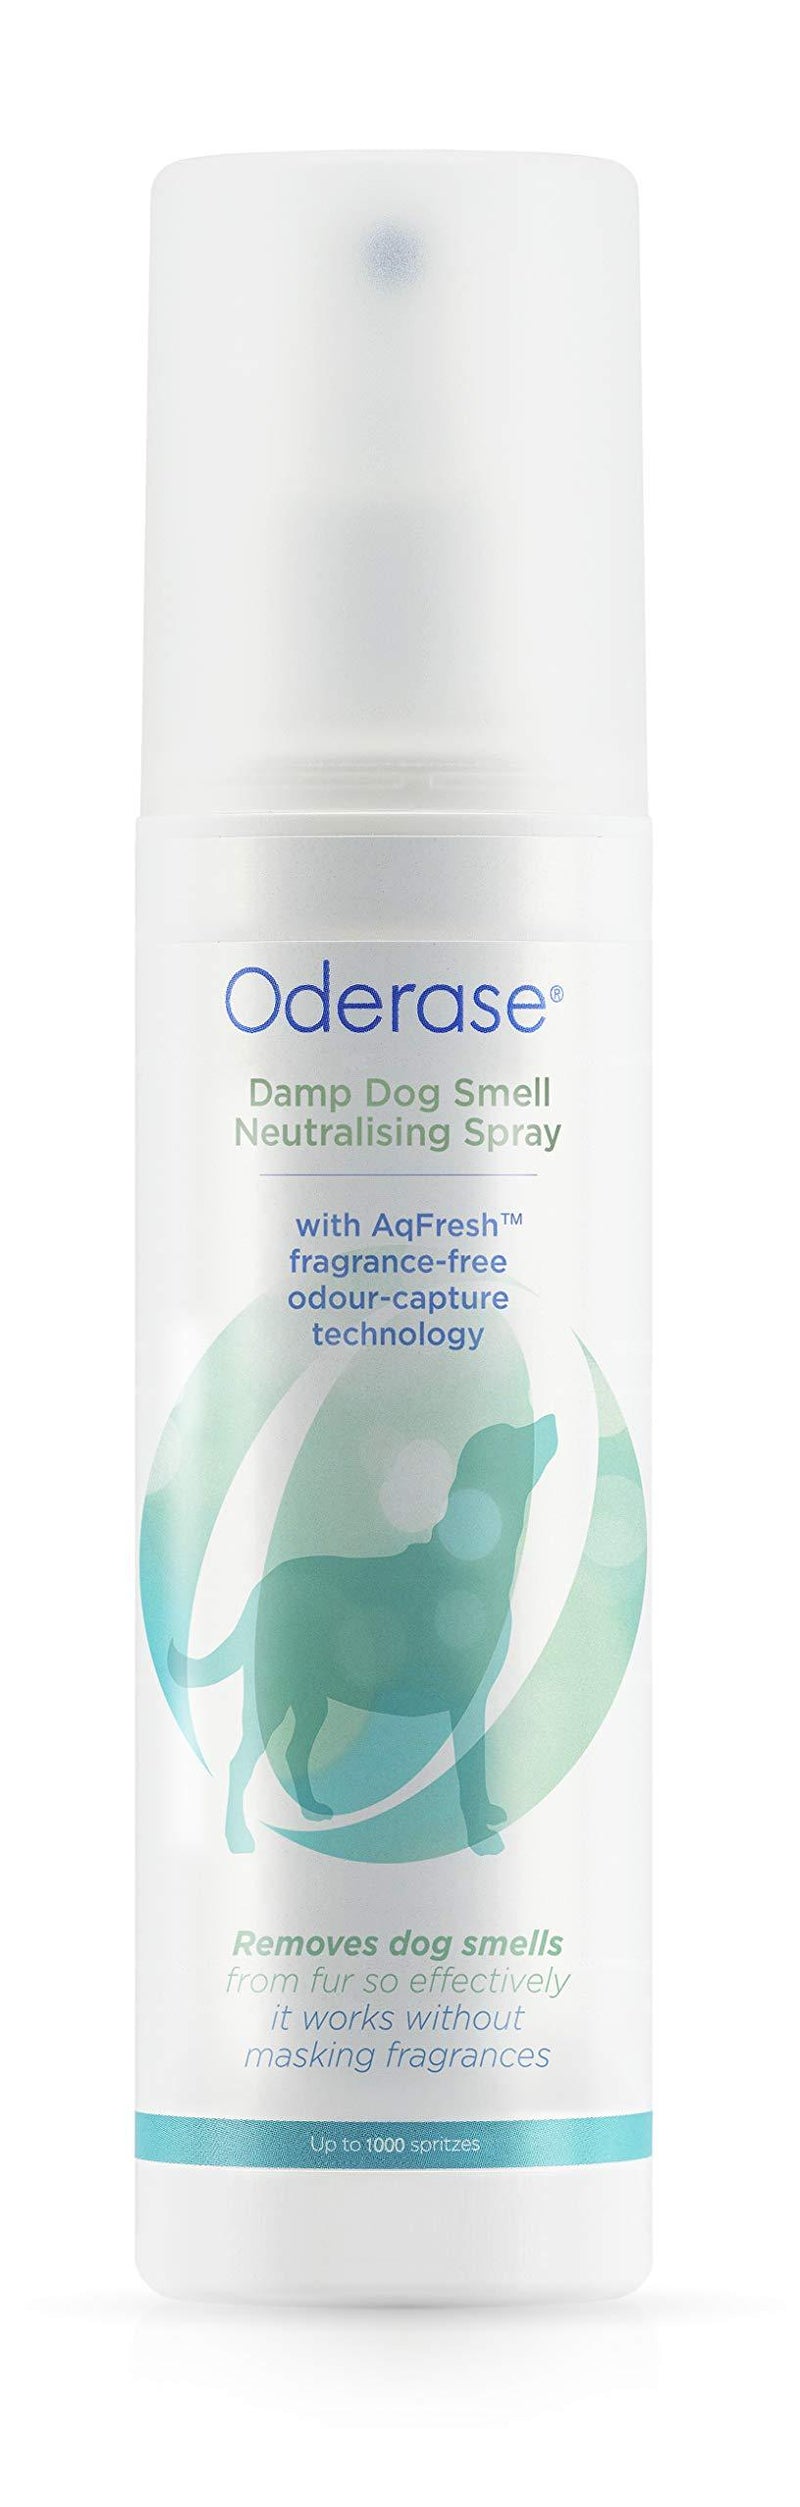 Oderase, Damp Dog Smell Neutralising Spray, Unscented, 200 ml - PawsPlanet Australia